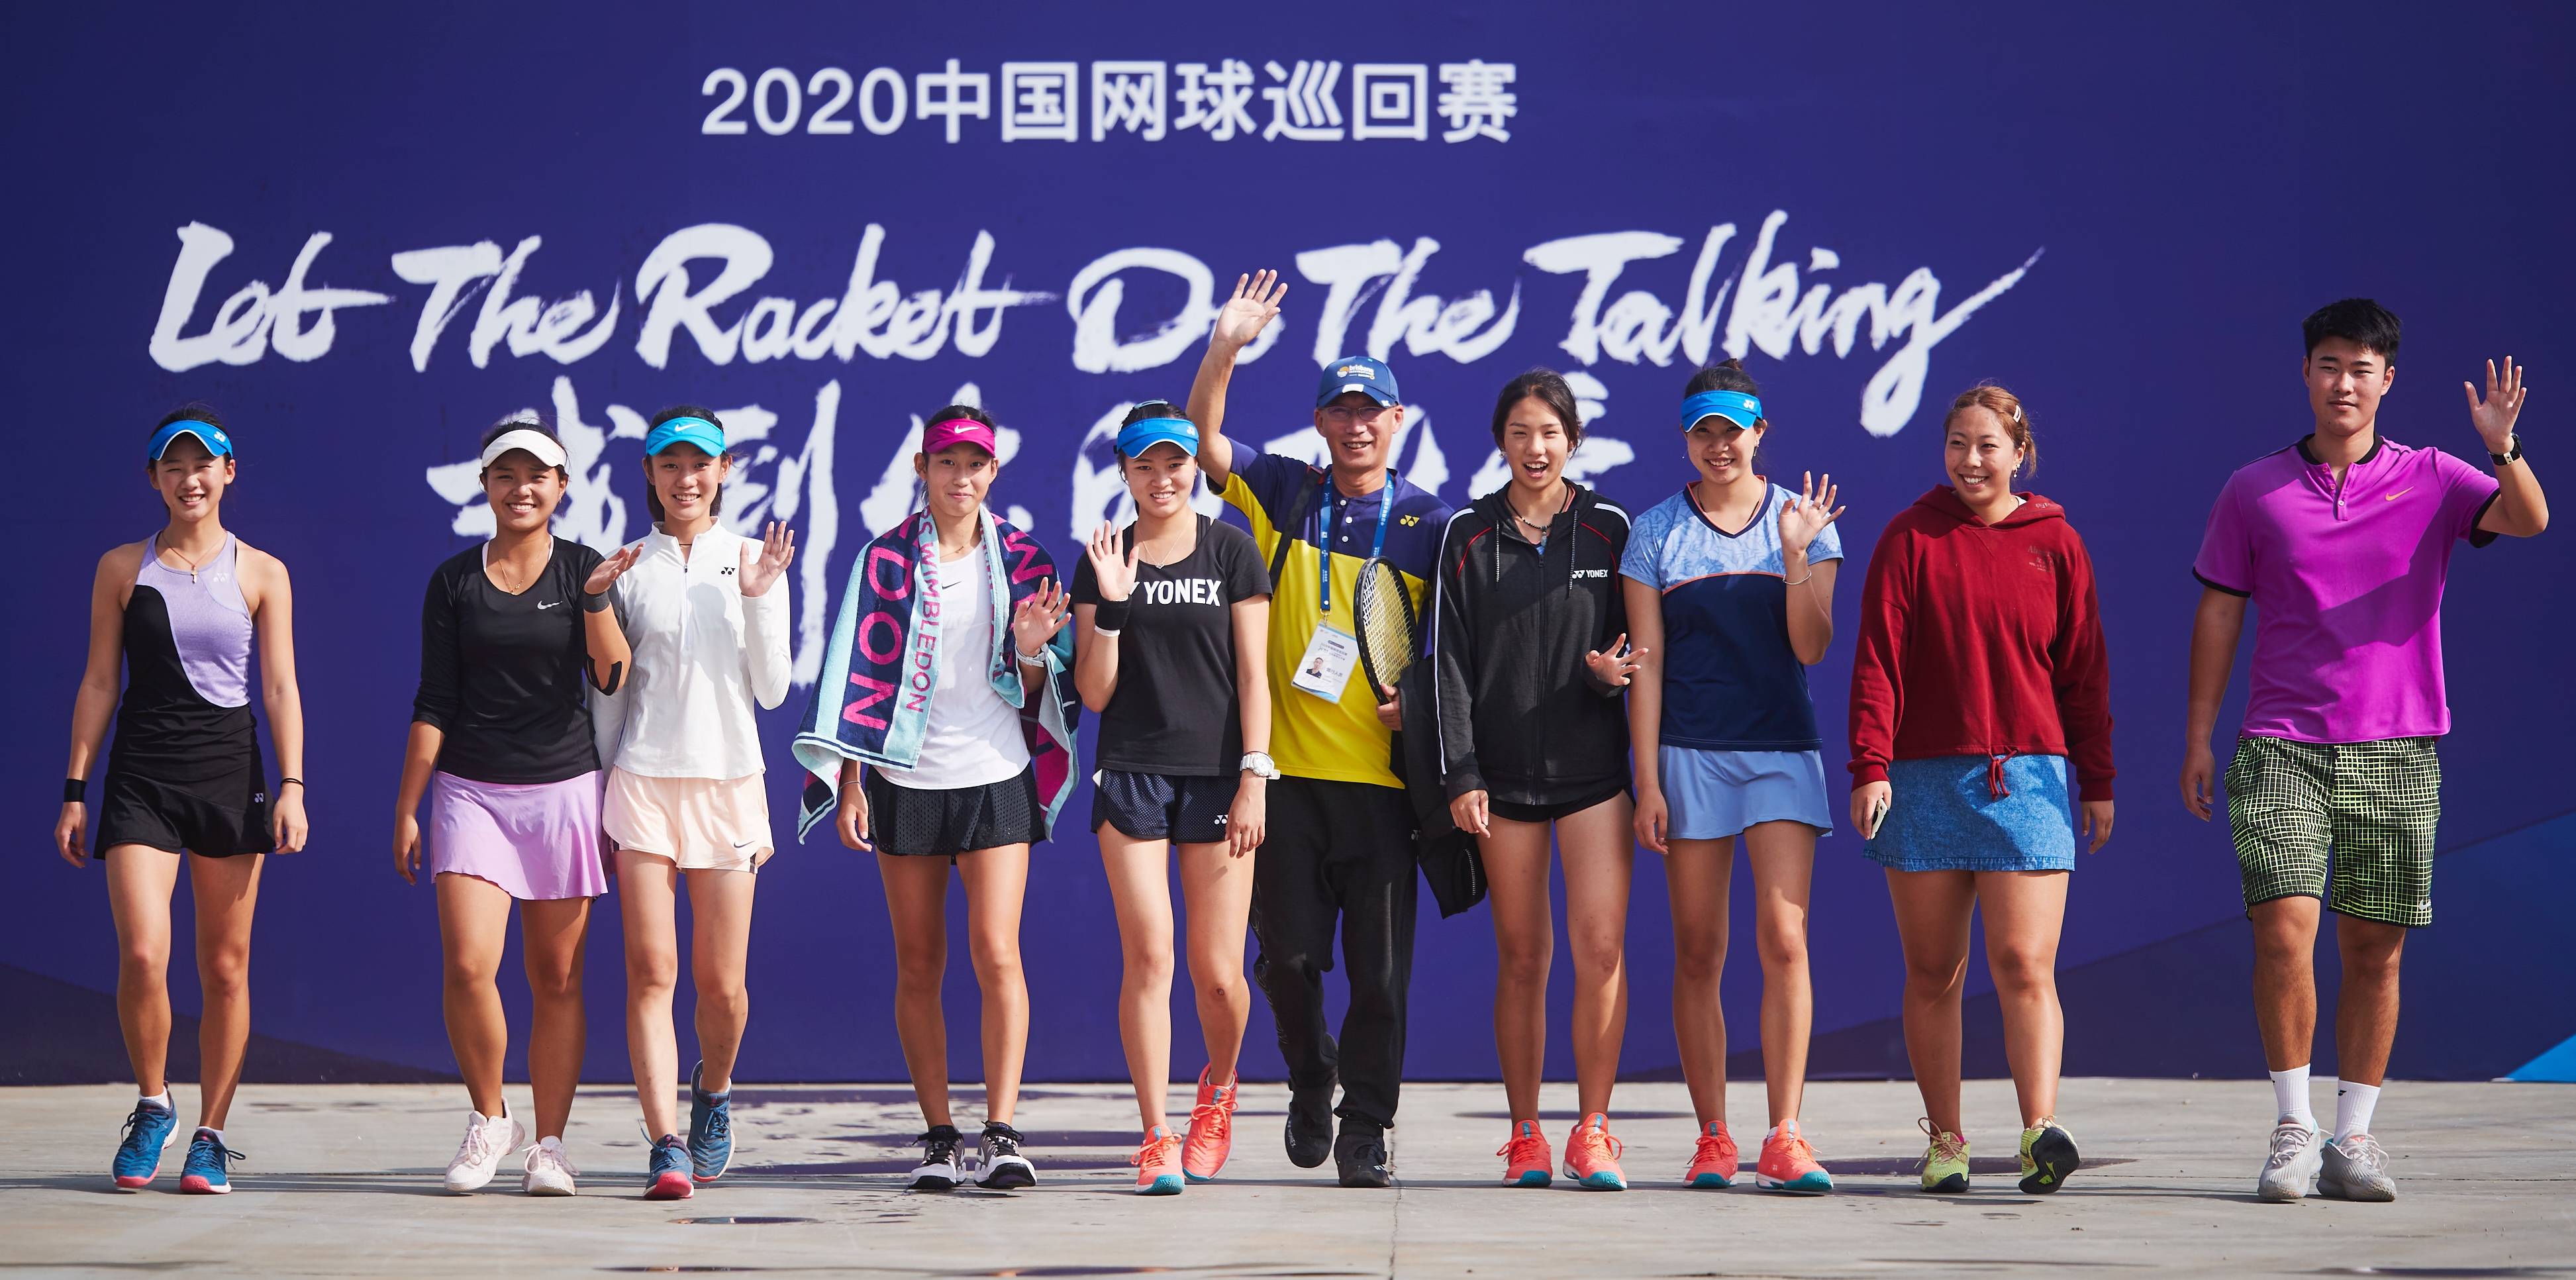 中国网球巡回赛已经成为国内自主赛事ip建设的优质模版,图片来自赛事